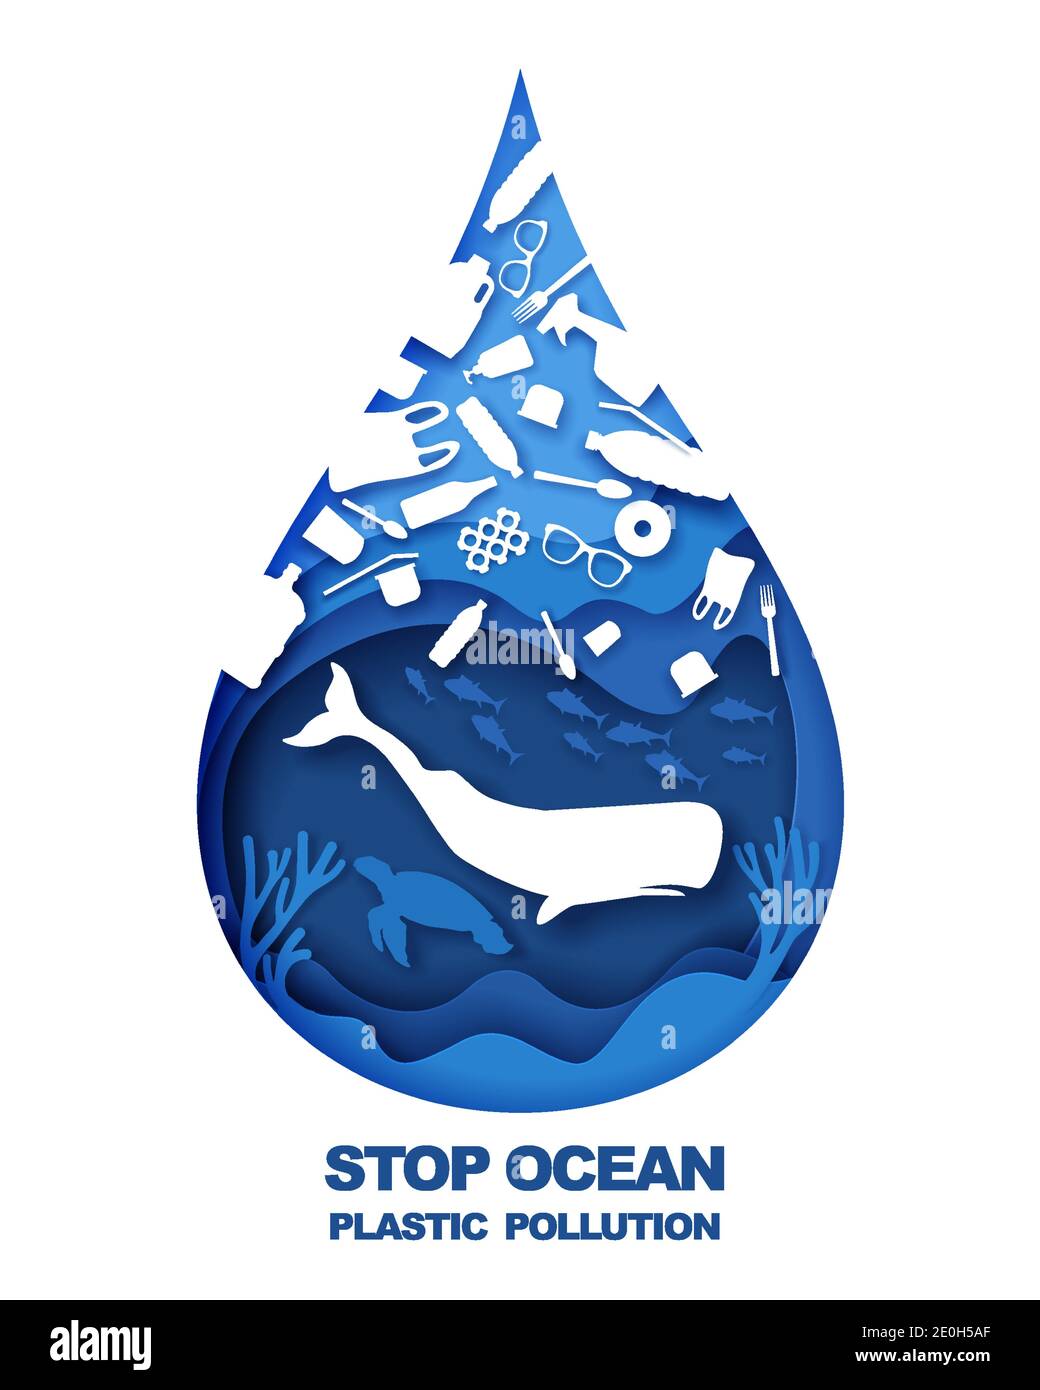 Sparen Sie den Ozean. Verhindern Sie die Verschmutzung durch Plastik. Vektorgrafik im Papierkunststil. Ozean Umweltproblem, Ökologie. Stock Vektor